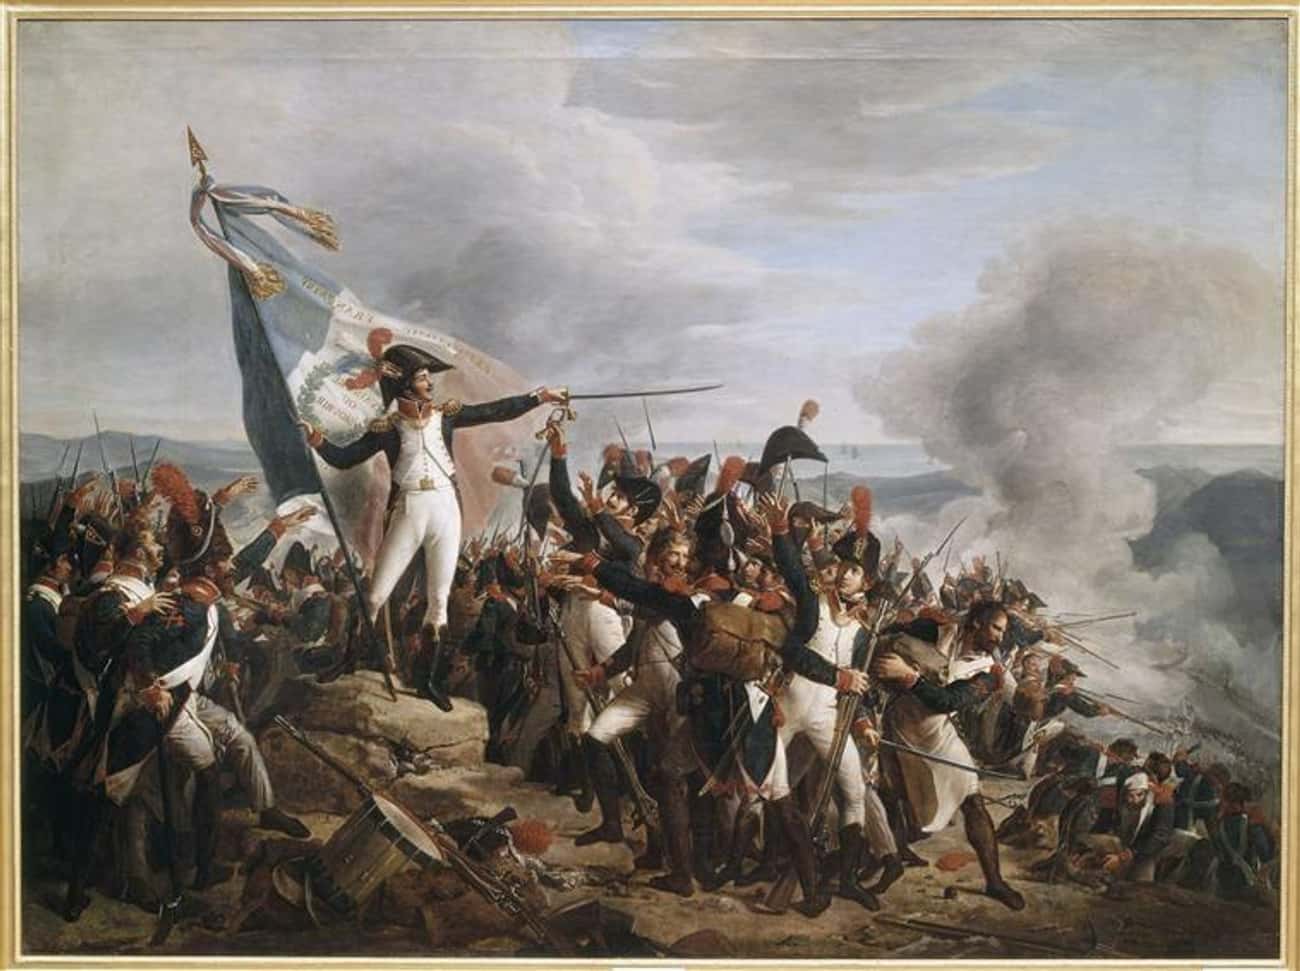 Итальянский поход наполеона дата. Наполеон Бонапарт 1796. Итальянская кампания Наполеона 1796-1797. Картина битва у Монтенотте. Битва при Лоди 1796 Наполеон.